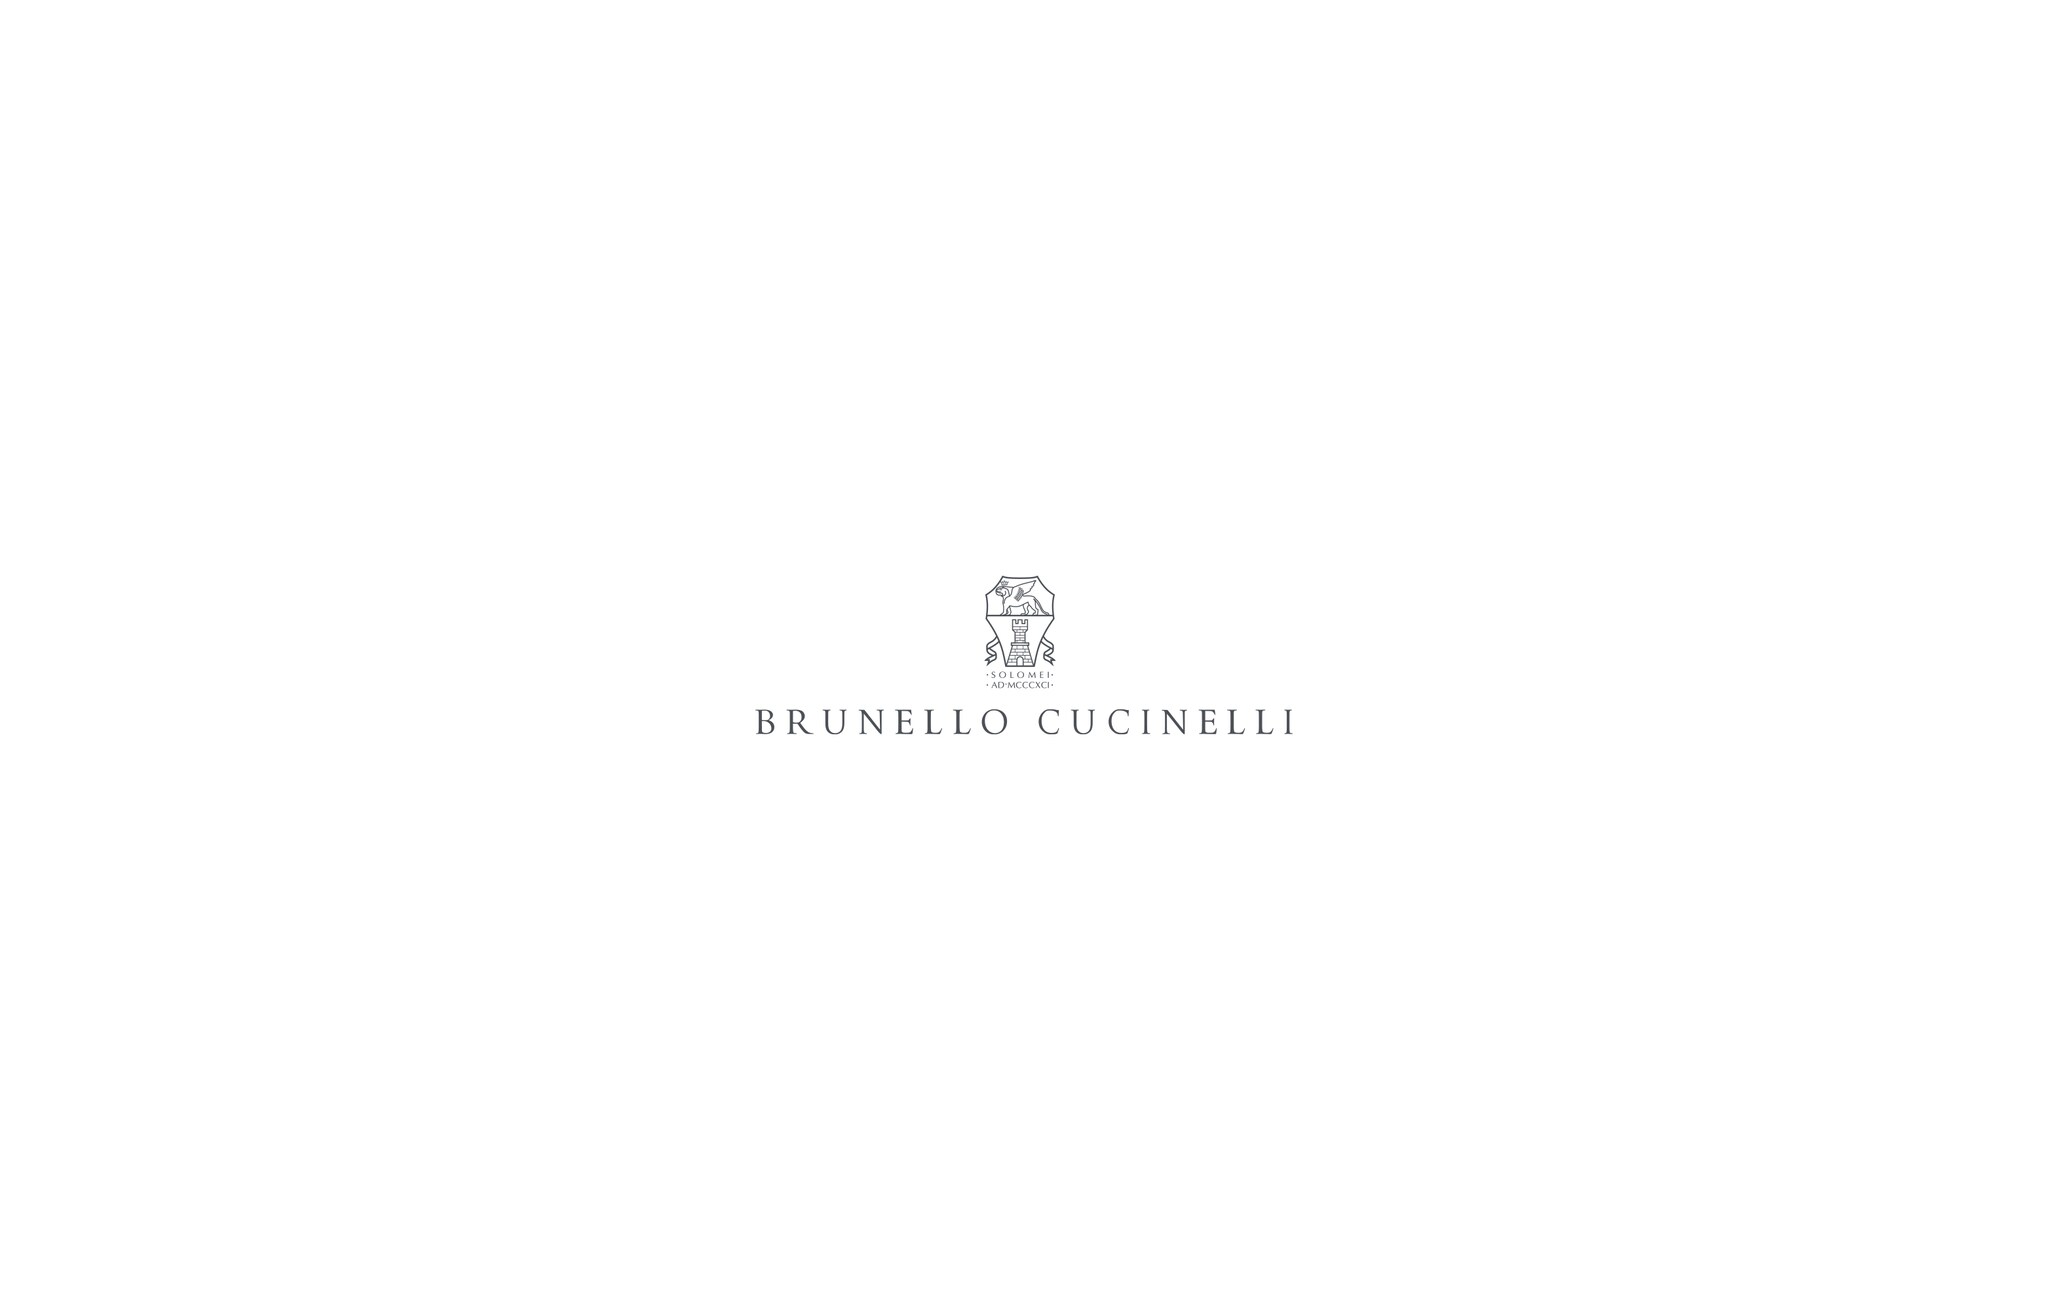  带风帽的上衣 钴蓝 男款 - Brunello Cucinelli 